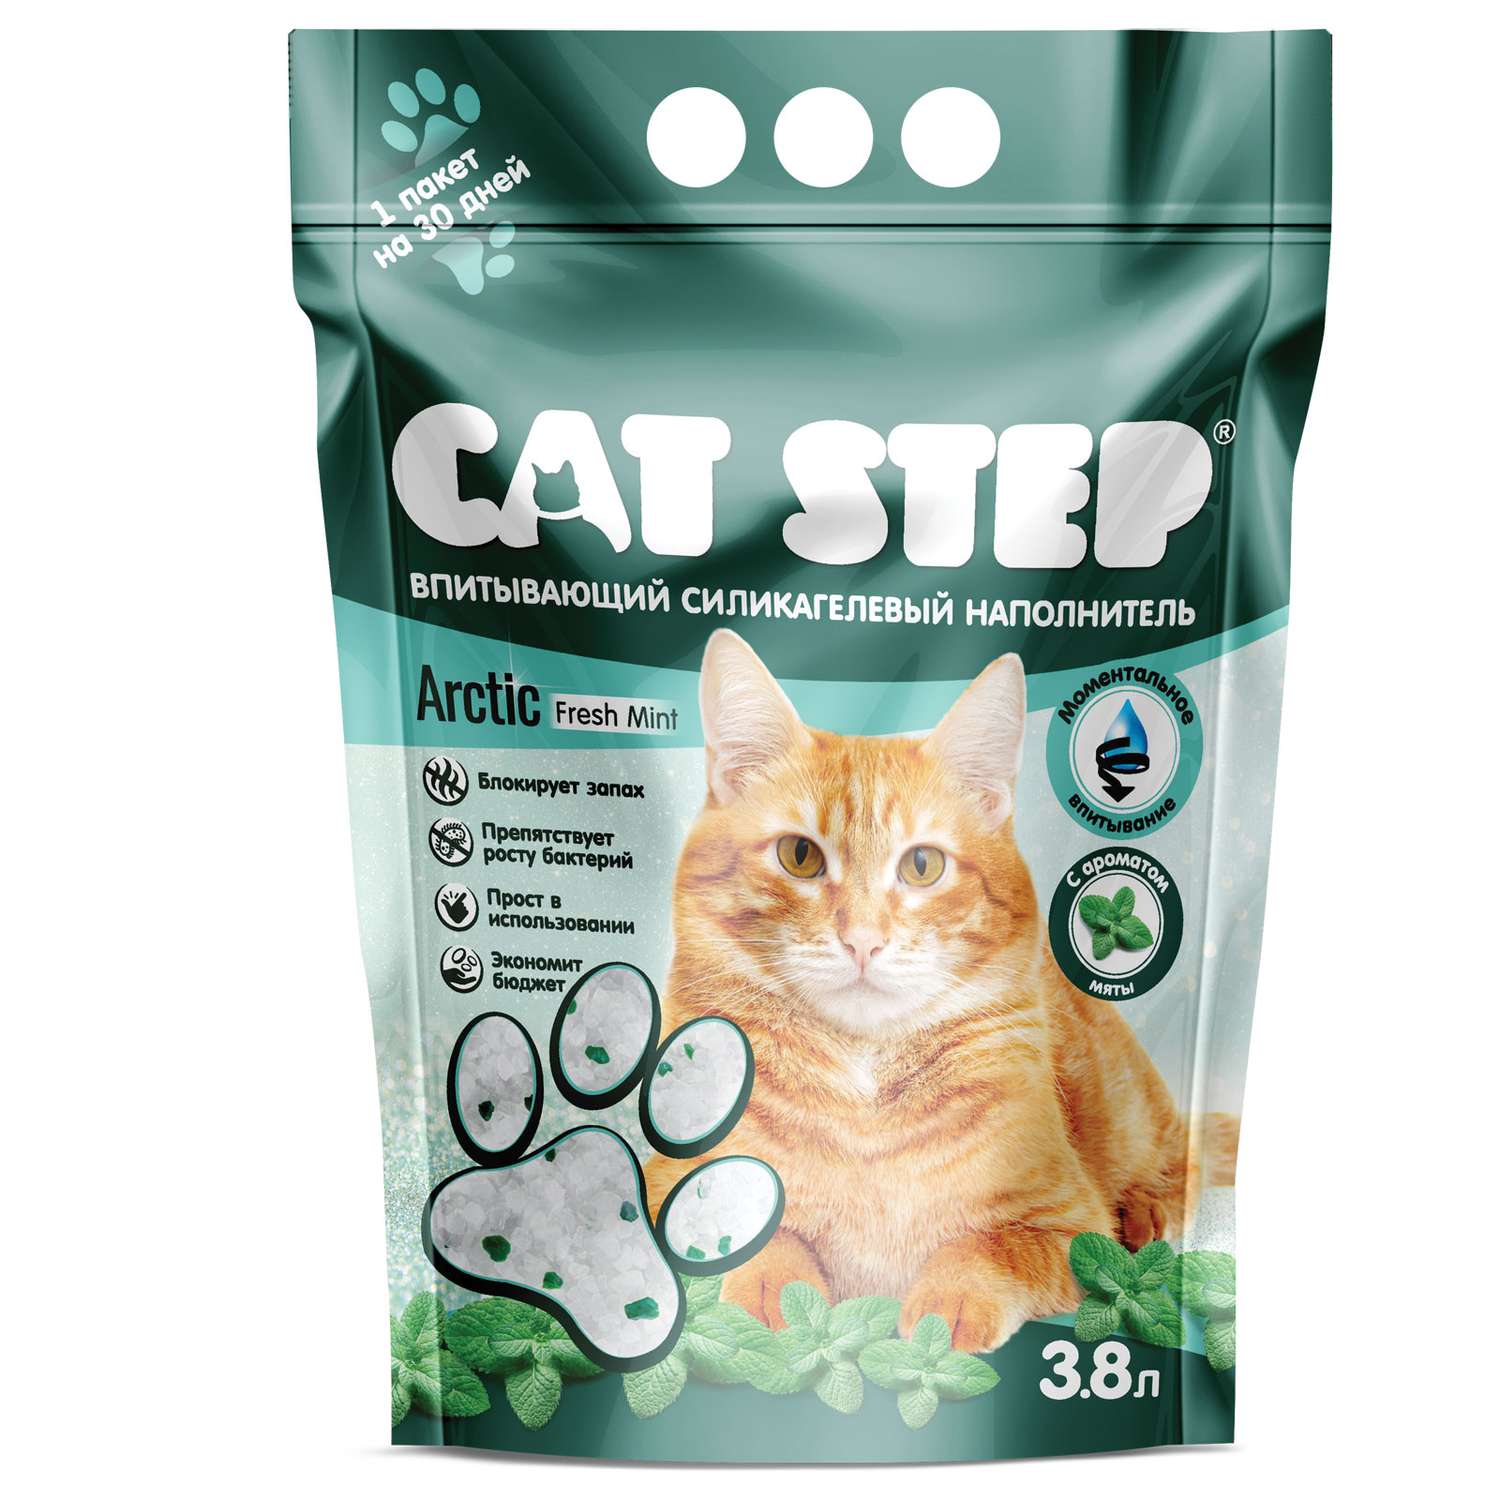 Наполнитель для кошек Cat Step Arctic Fresh Mint впитывающий силикагелевый 3.8л - фото 2